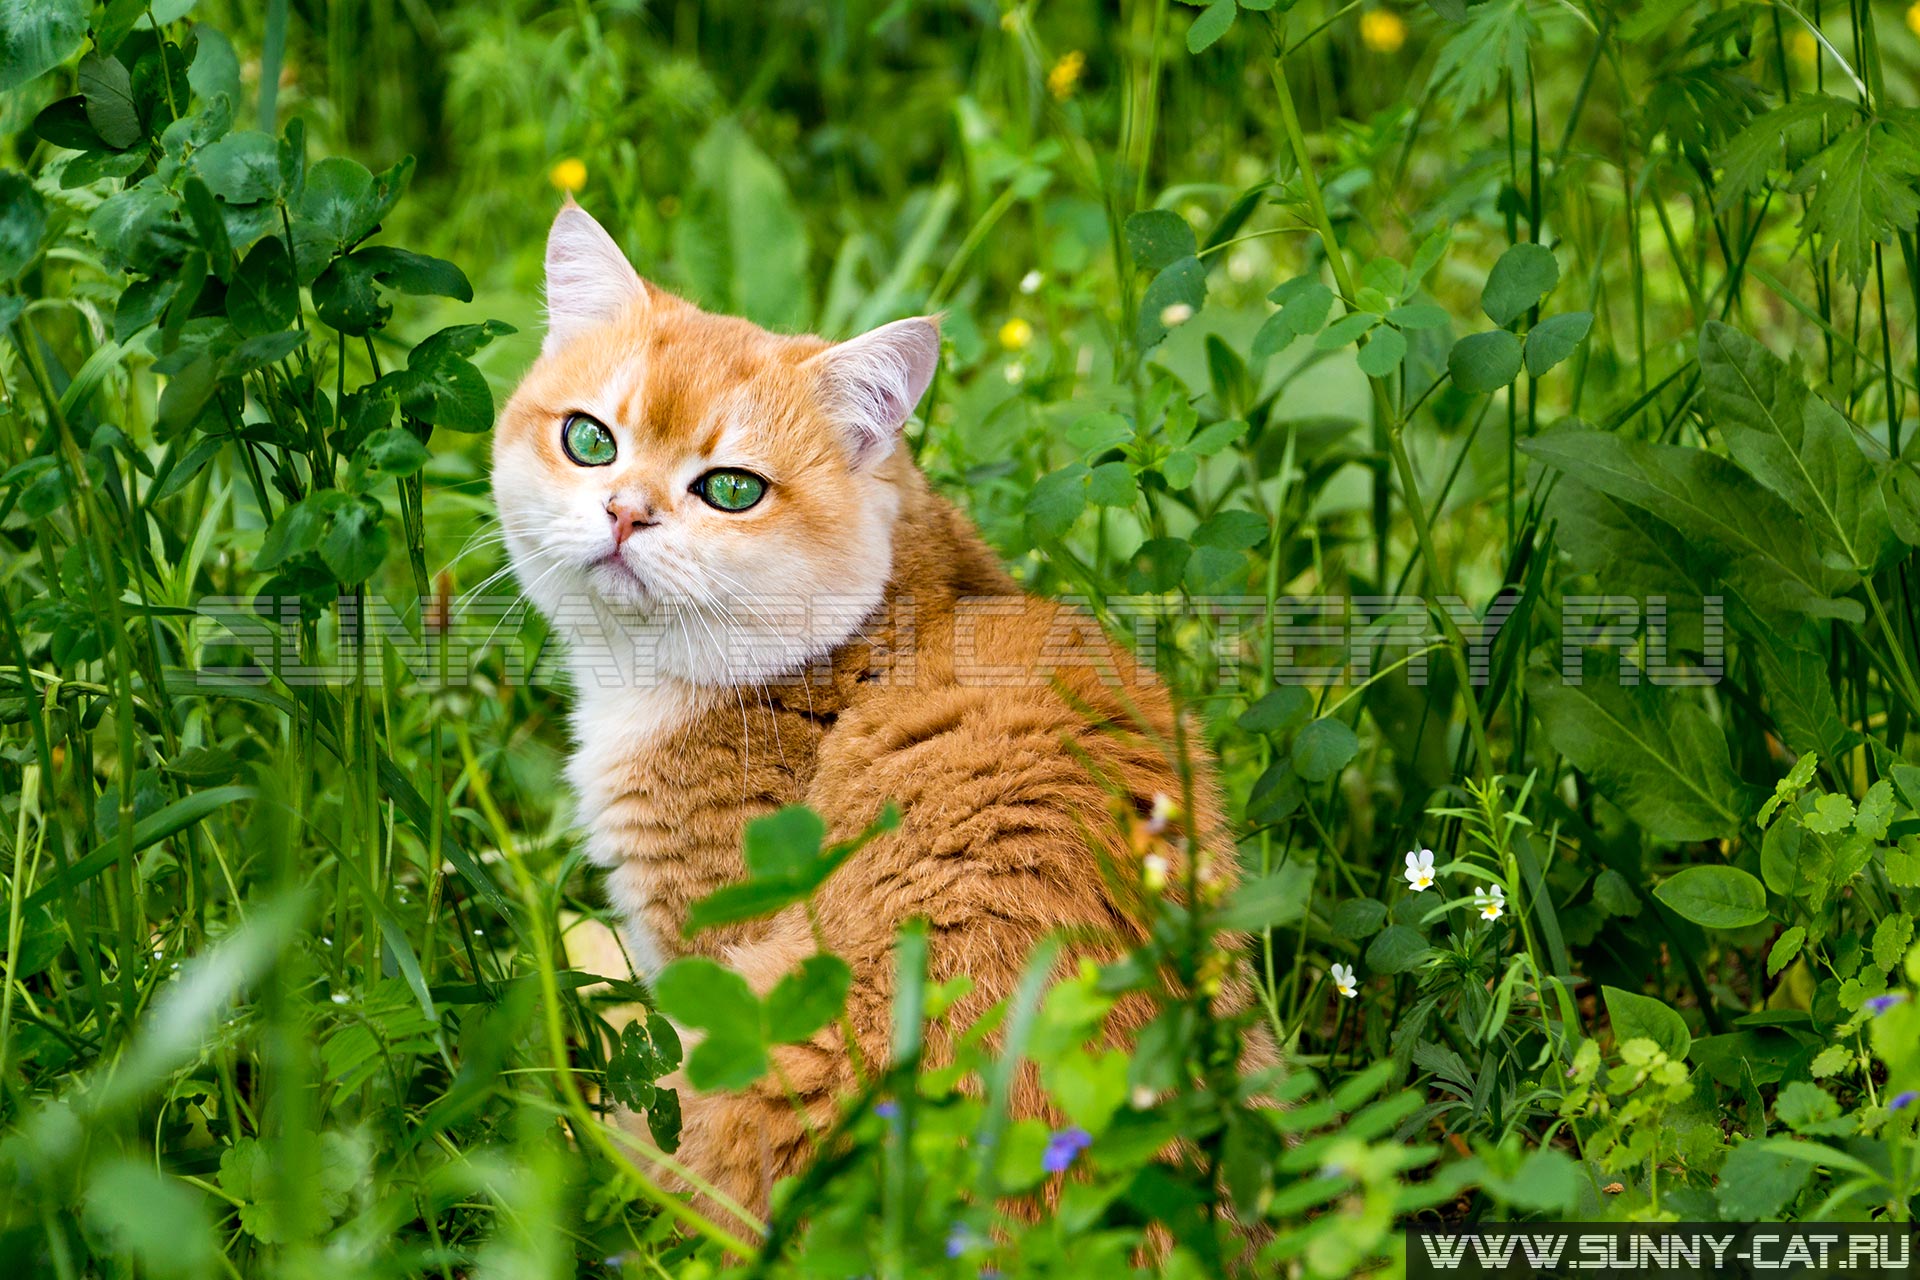 Кот в зеленой траве и цветах, красивый рыжий британский кот с зелеными глазами сидит в густой траве среди маленьких цветов и смотрит в камеру.